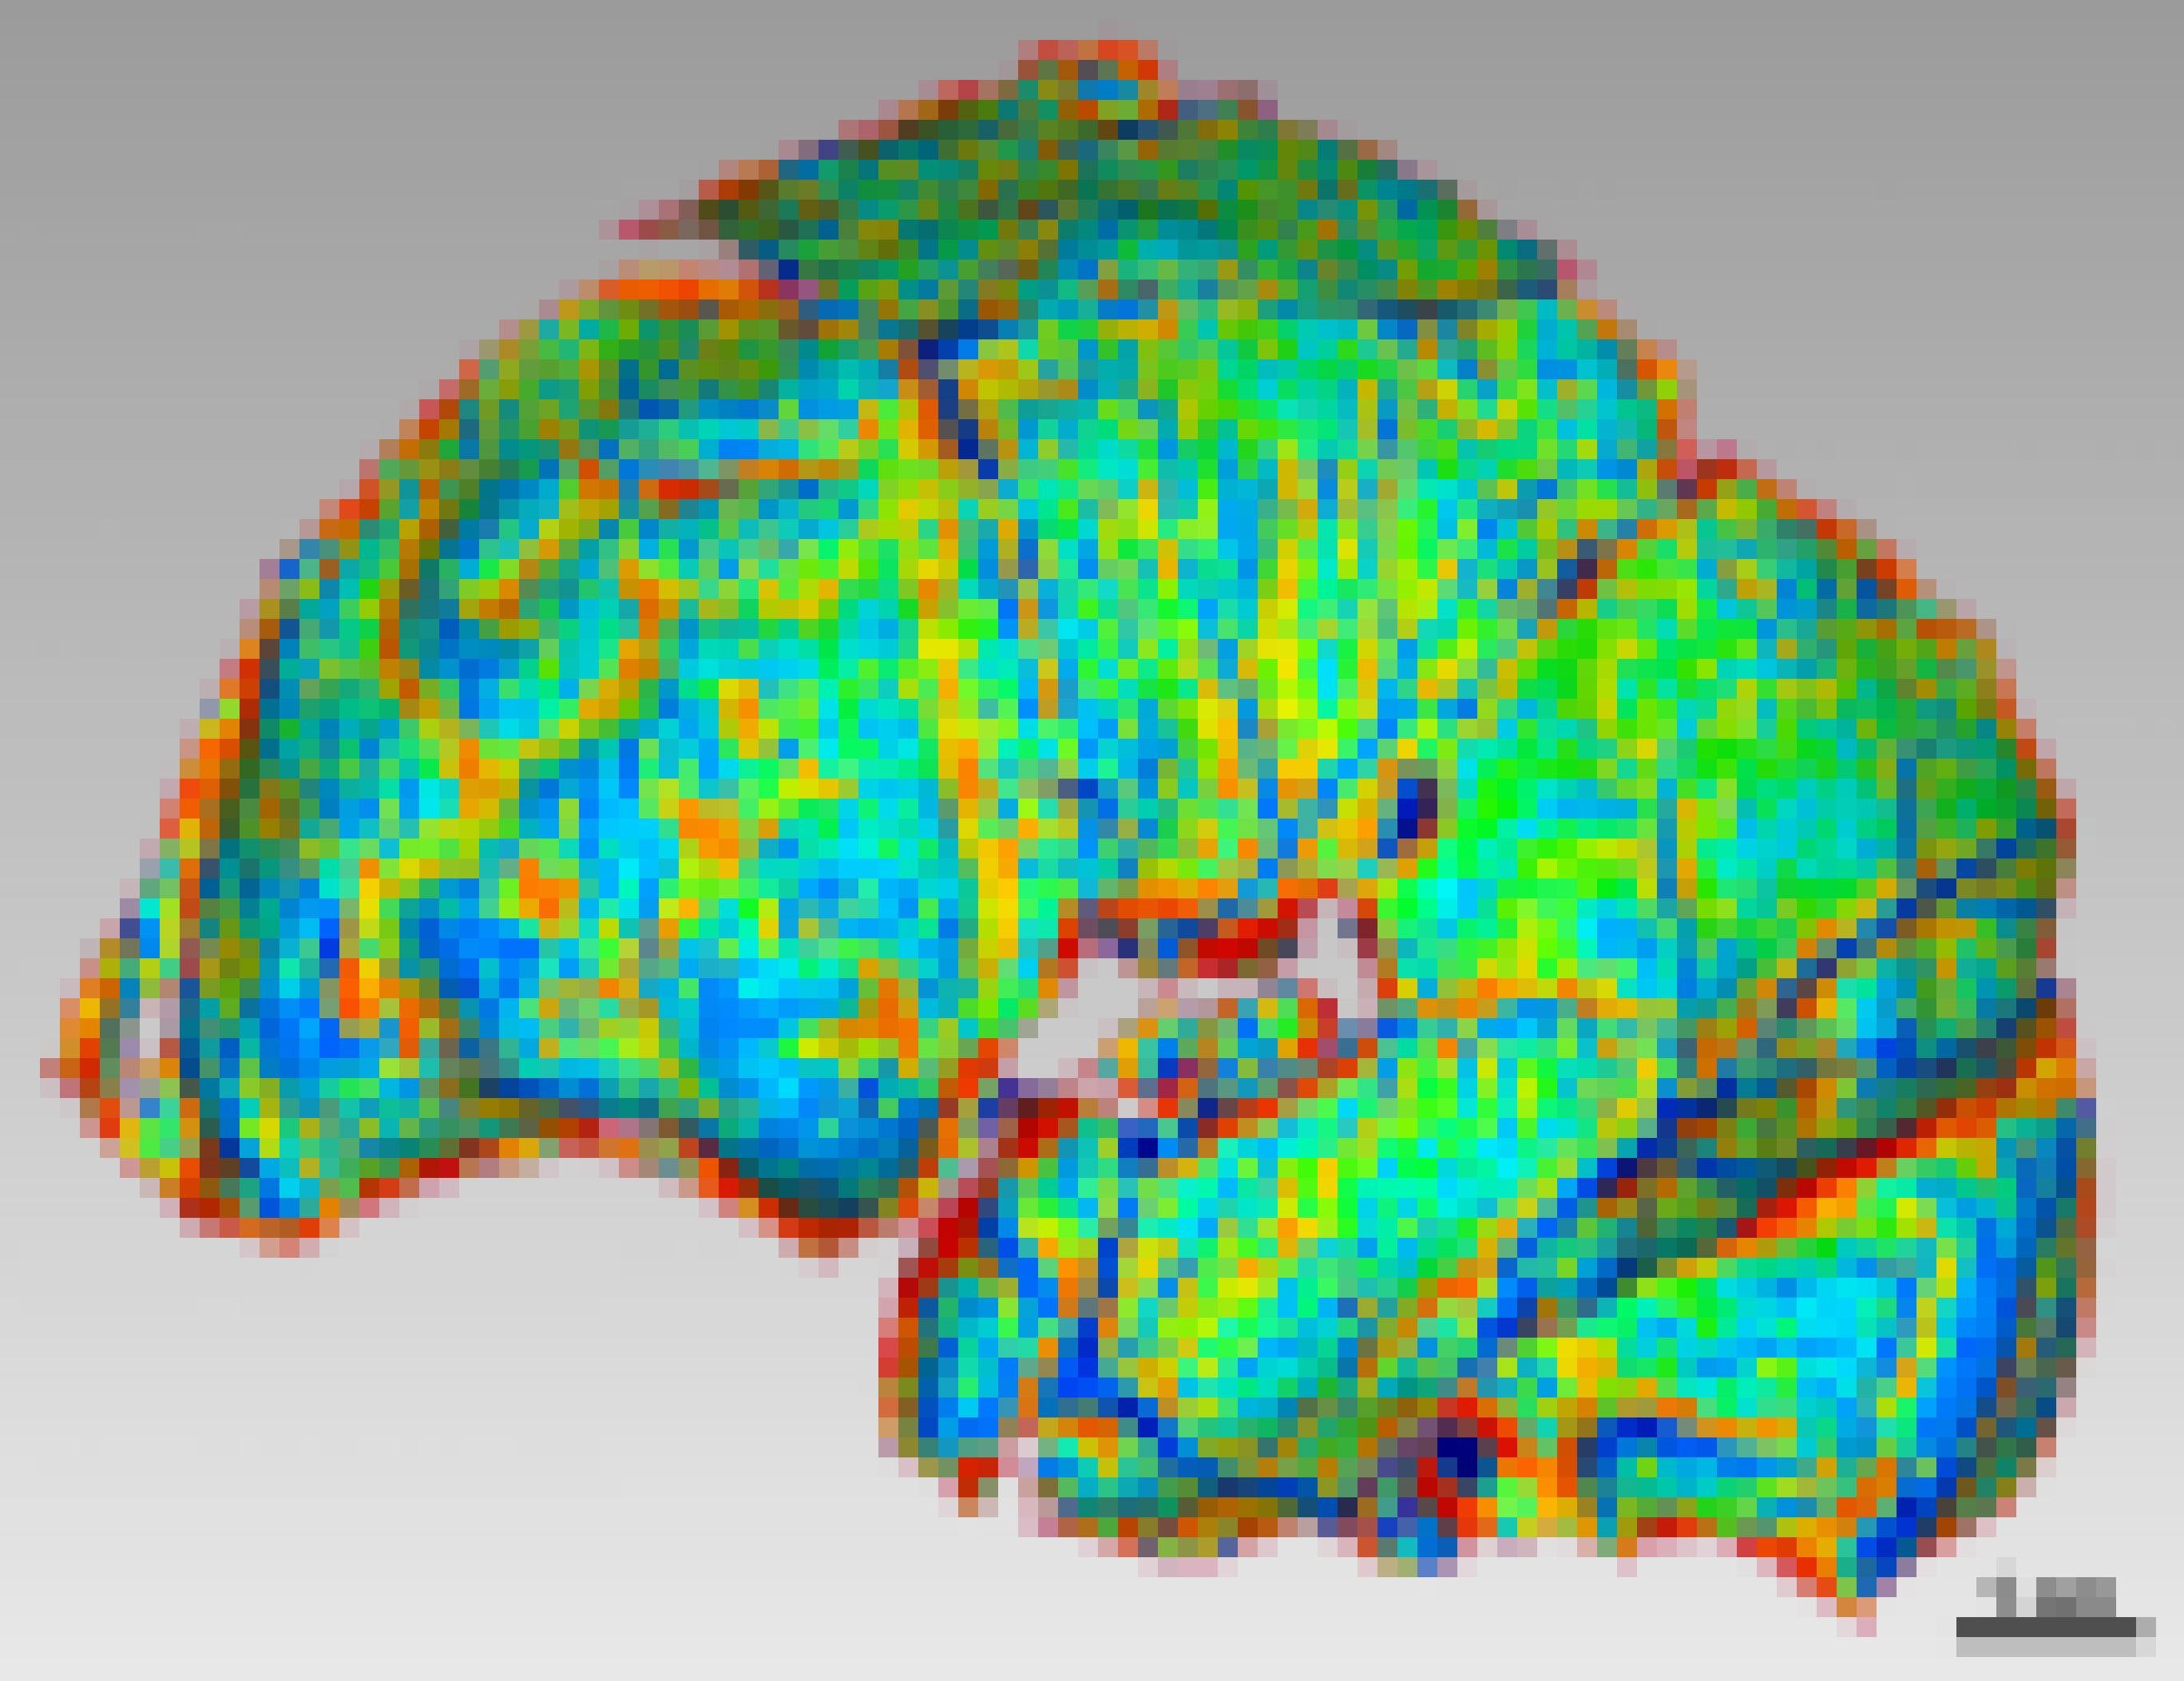 Hier ist die graphische Darstellung vom Inneren der Schädelkapsel eines Homo naledi zu seihen. Strukturen sind in den Farben rot, gelb, grün, blau dargestellt und lassen Bögen und Wölbungen des Gehirns erkennen.